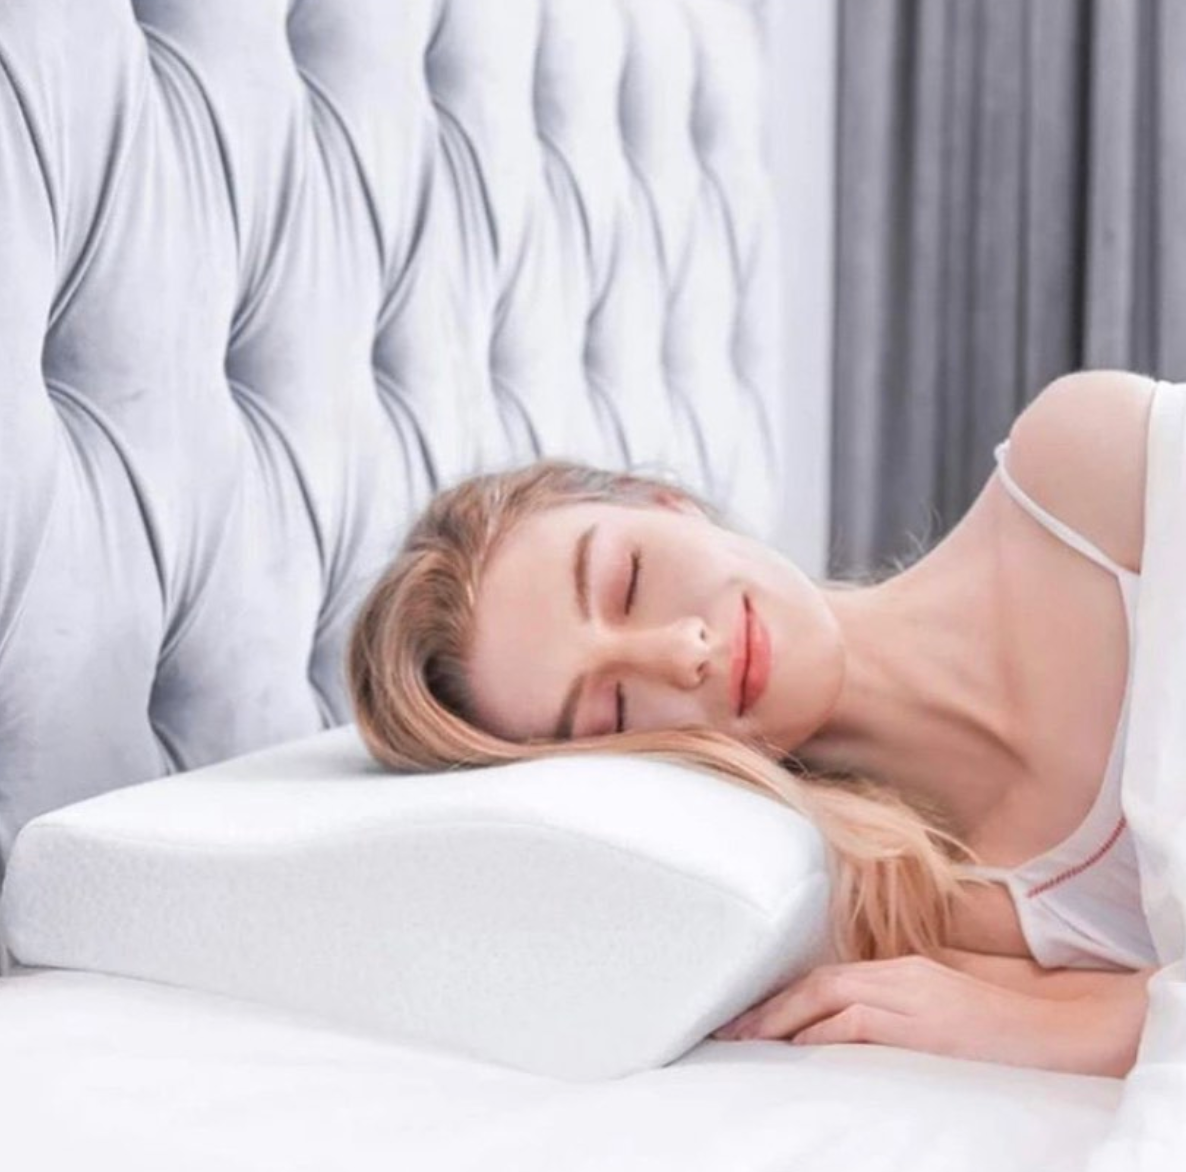 Heb je moeite om een ontspannende en comfortable nachtrust te krijgen? Probeer eens een ander slaapkussen.